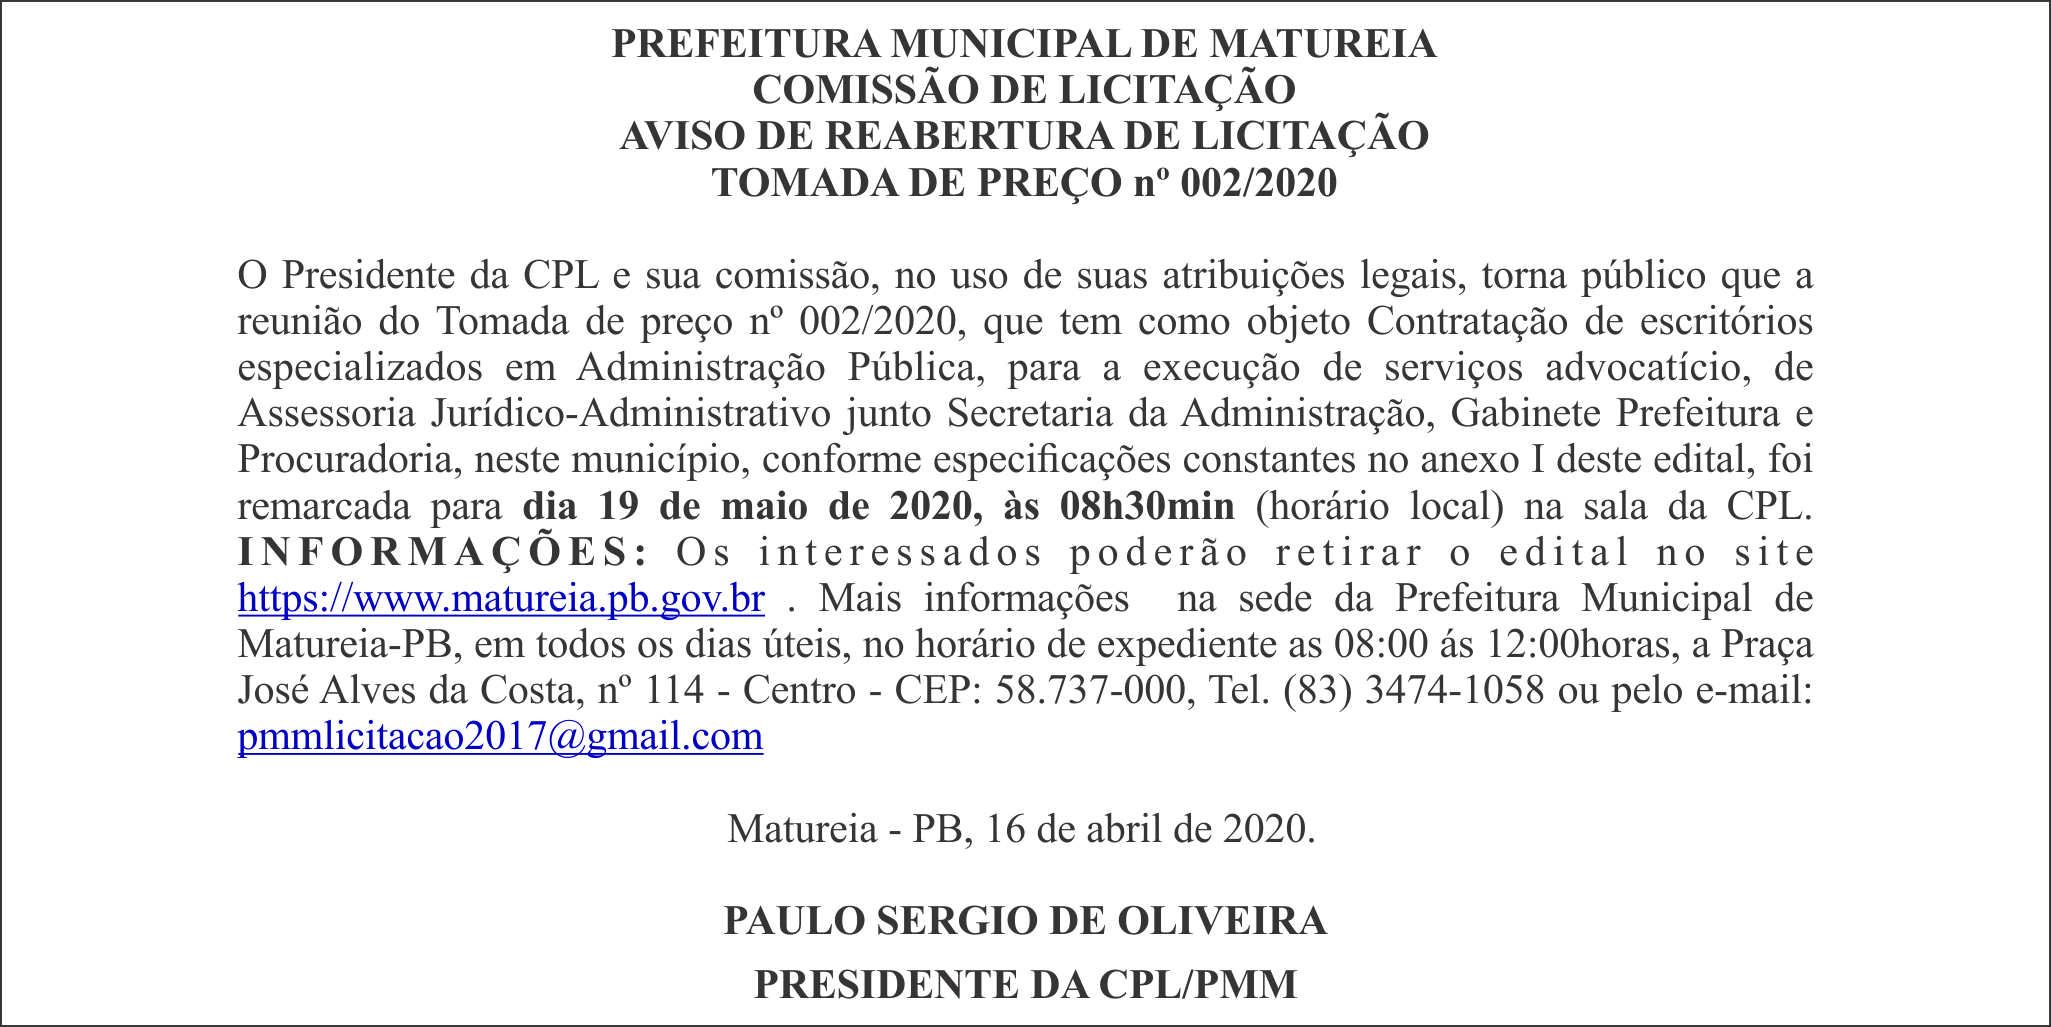 PREFEITURA MUNICIPAL DE MATUREIA – AVISO DE REABERTURA DE LICITAÇÃO – TOMADA DE PREÇO nº 002/2020